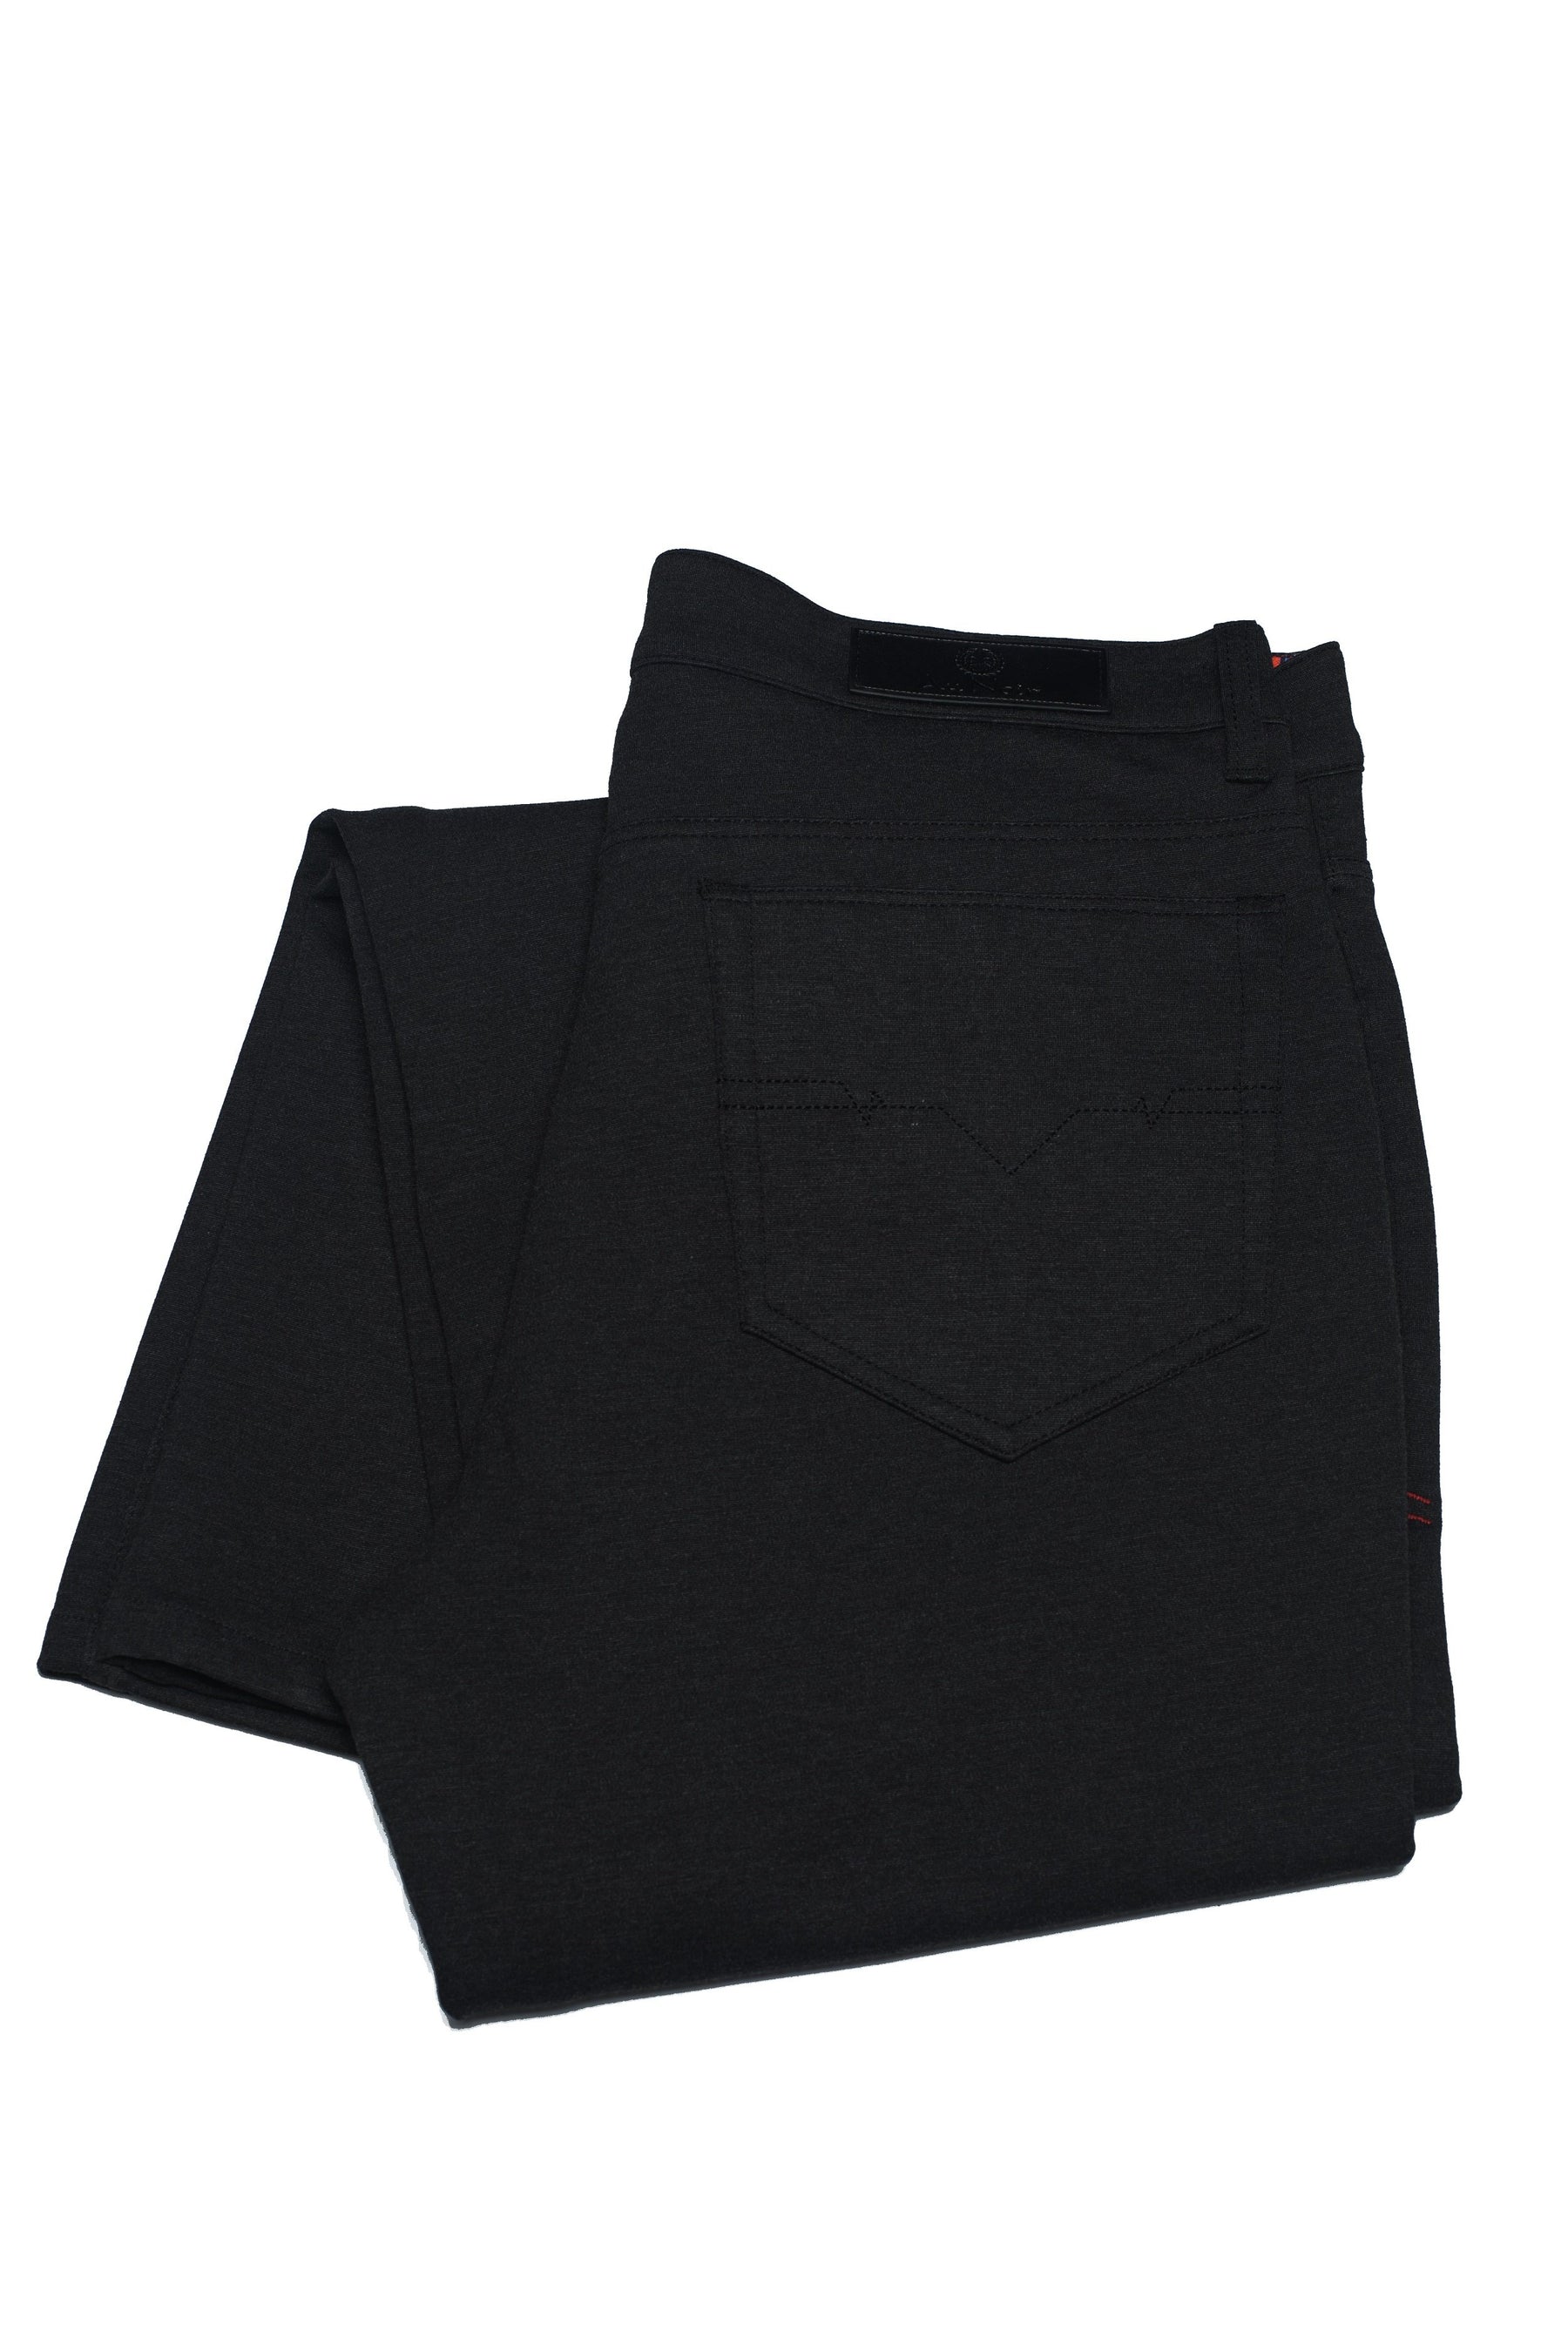 Pantalon Au Noir - WINCHESTER black